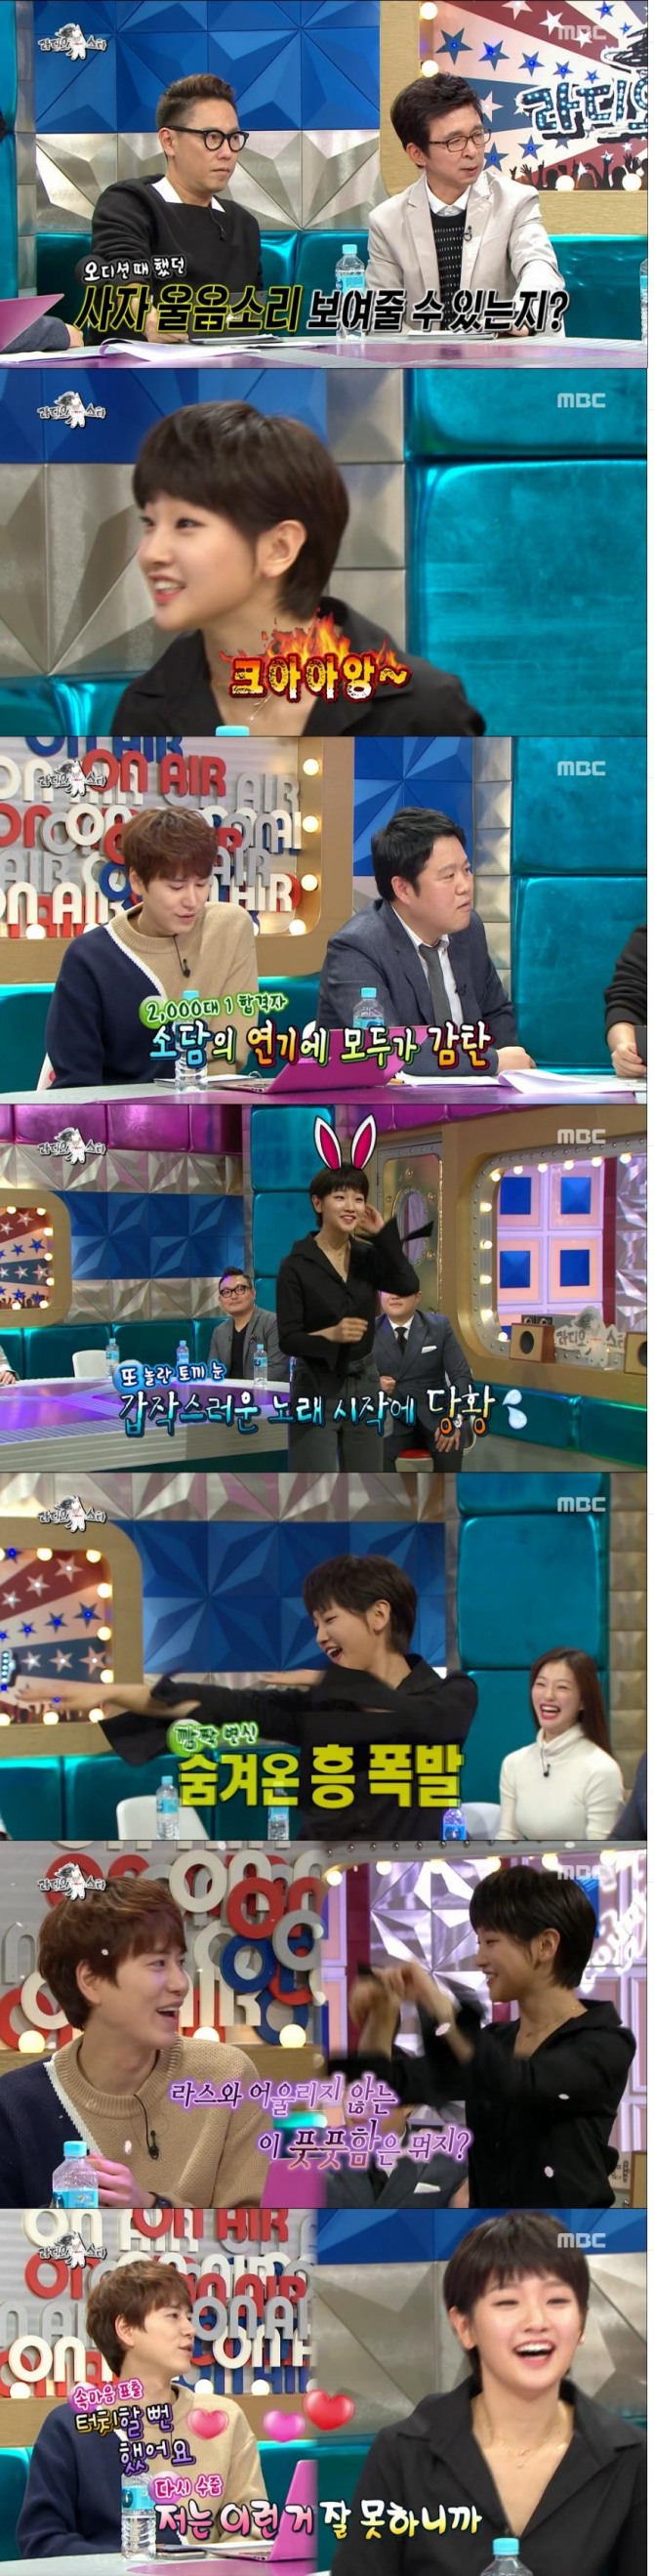 20일 저녁 방송된 MBC '황금어장 라디오스타'에서 배우 박소담이 게스트로 출연해 청순하고도 섹시한 매력을 과시했다./사진=MBC 방송 캡처 